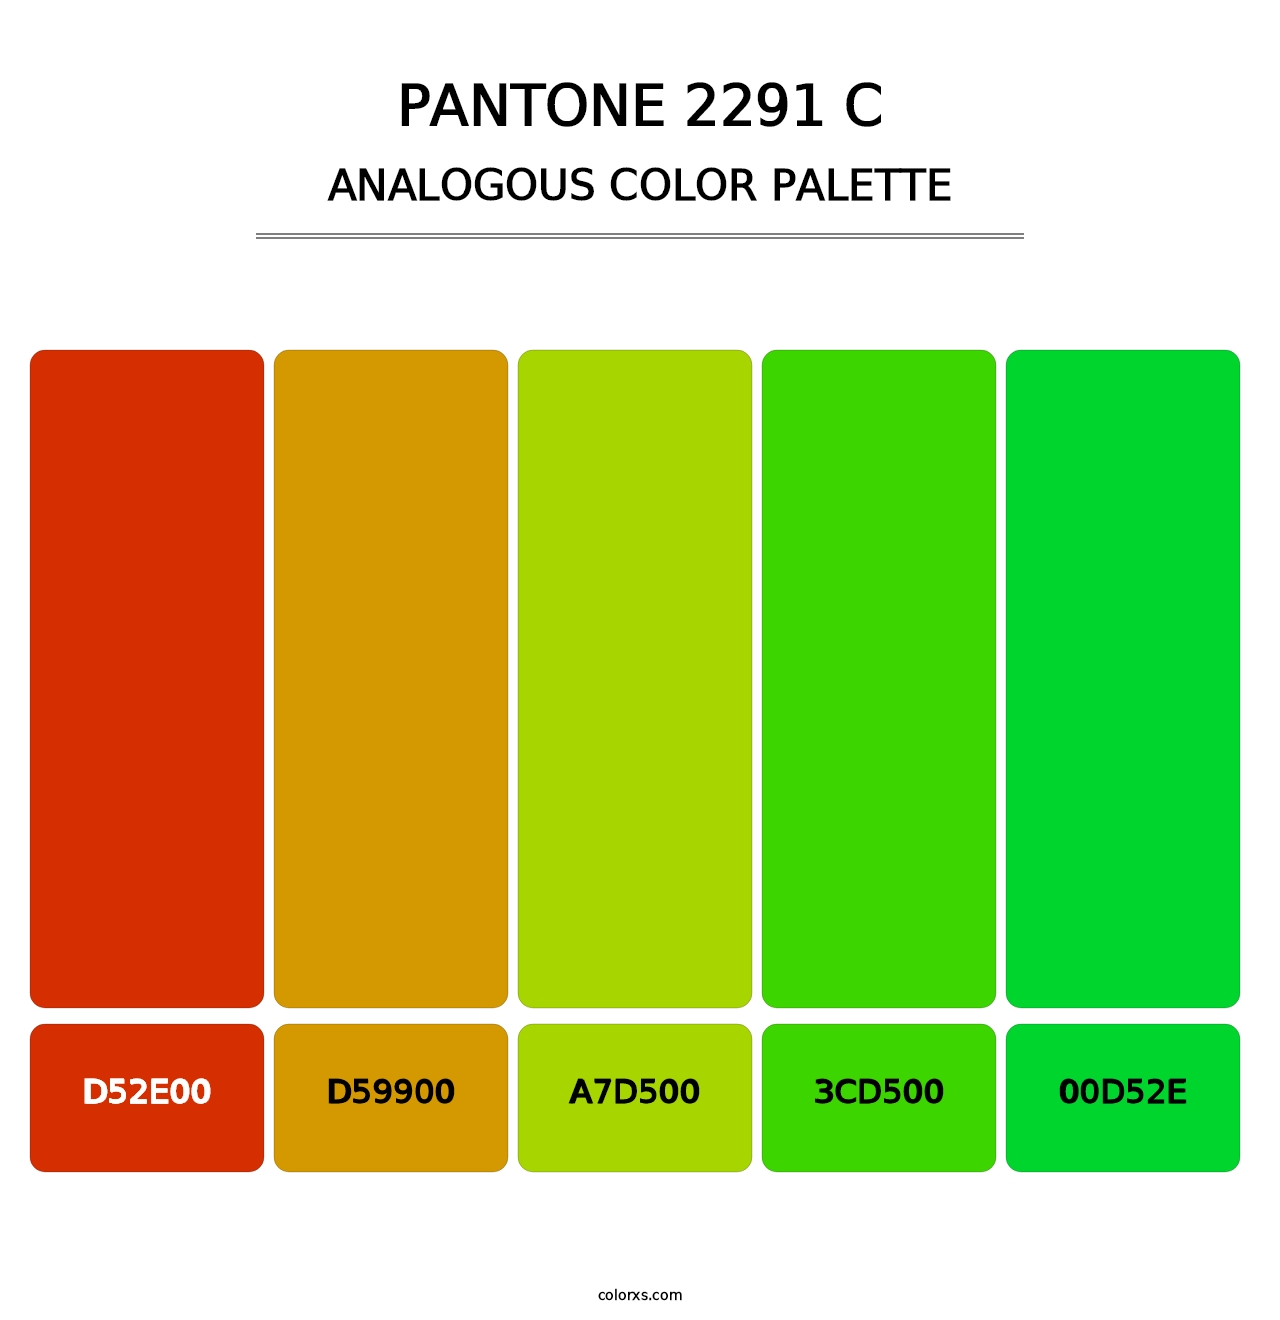 PANTONE 2291 C - Analogous Color Palette